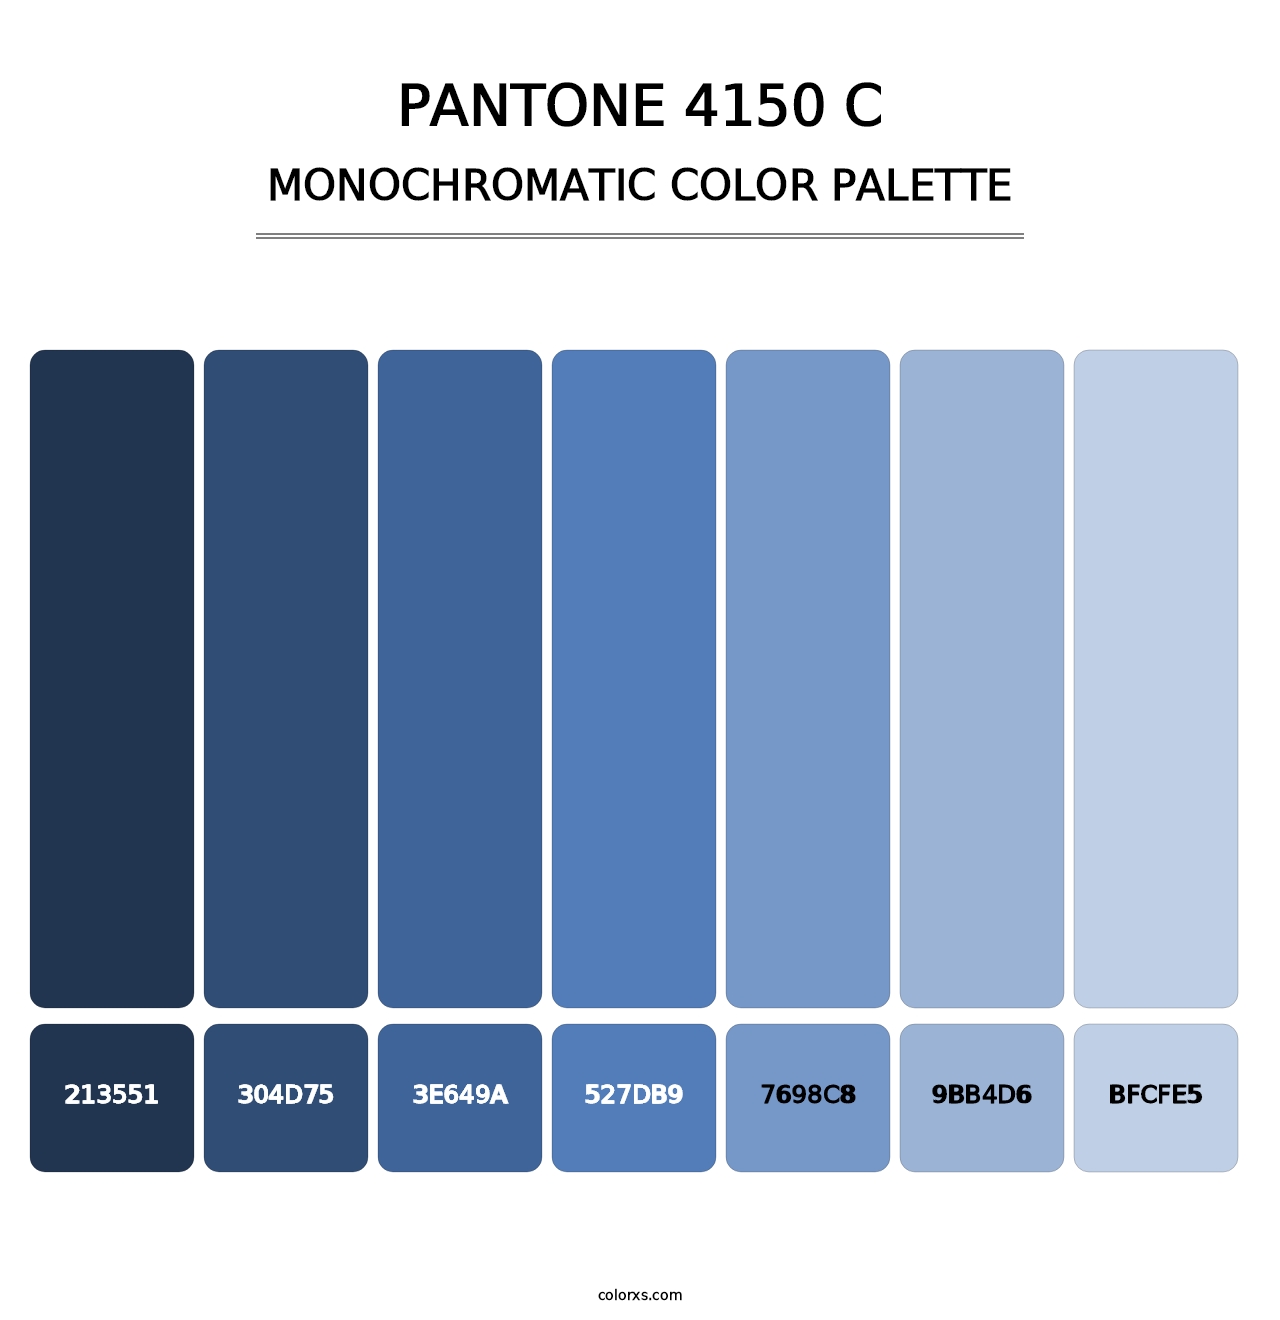 PANTONE 4150 C - Monochromatic Color Palette